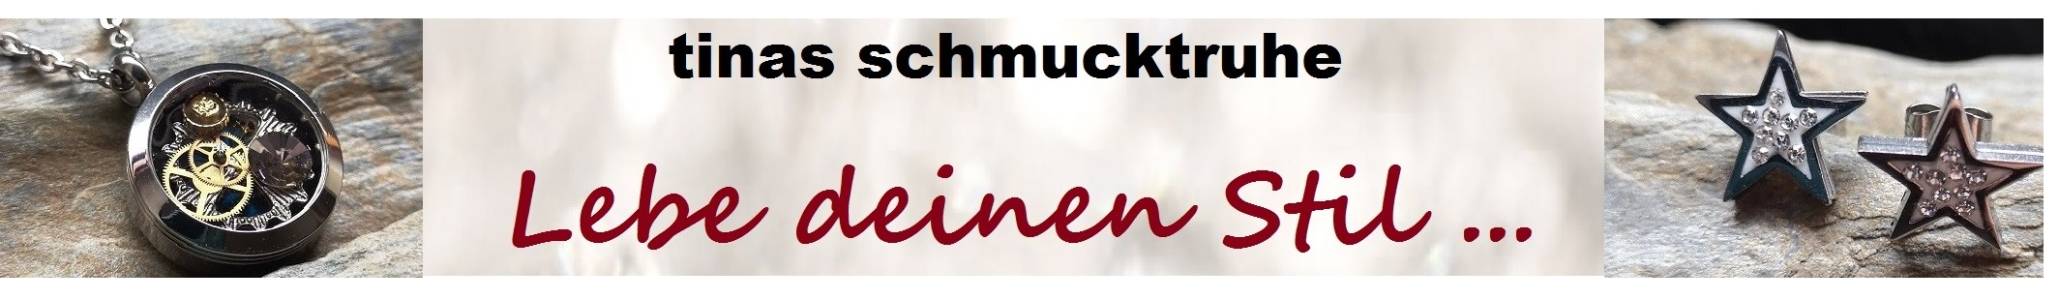 Tinas Schmucktruhe Shope | kasuwa.de